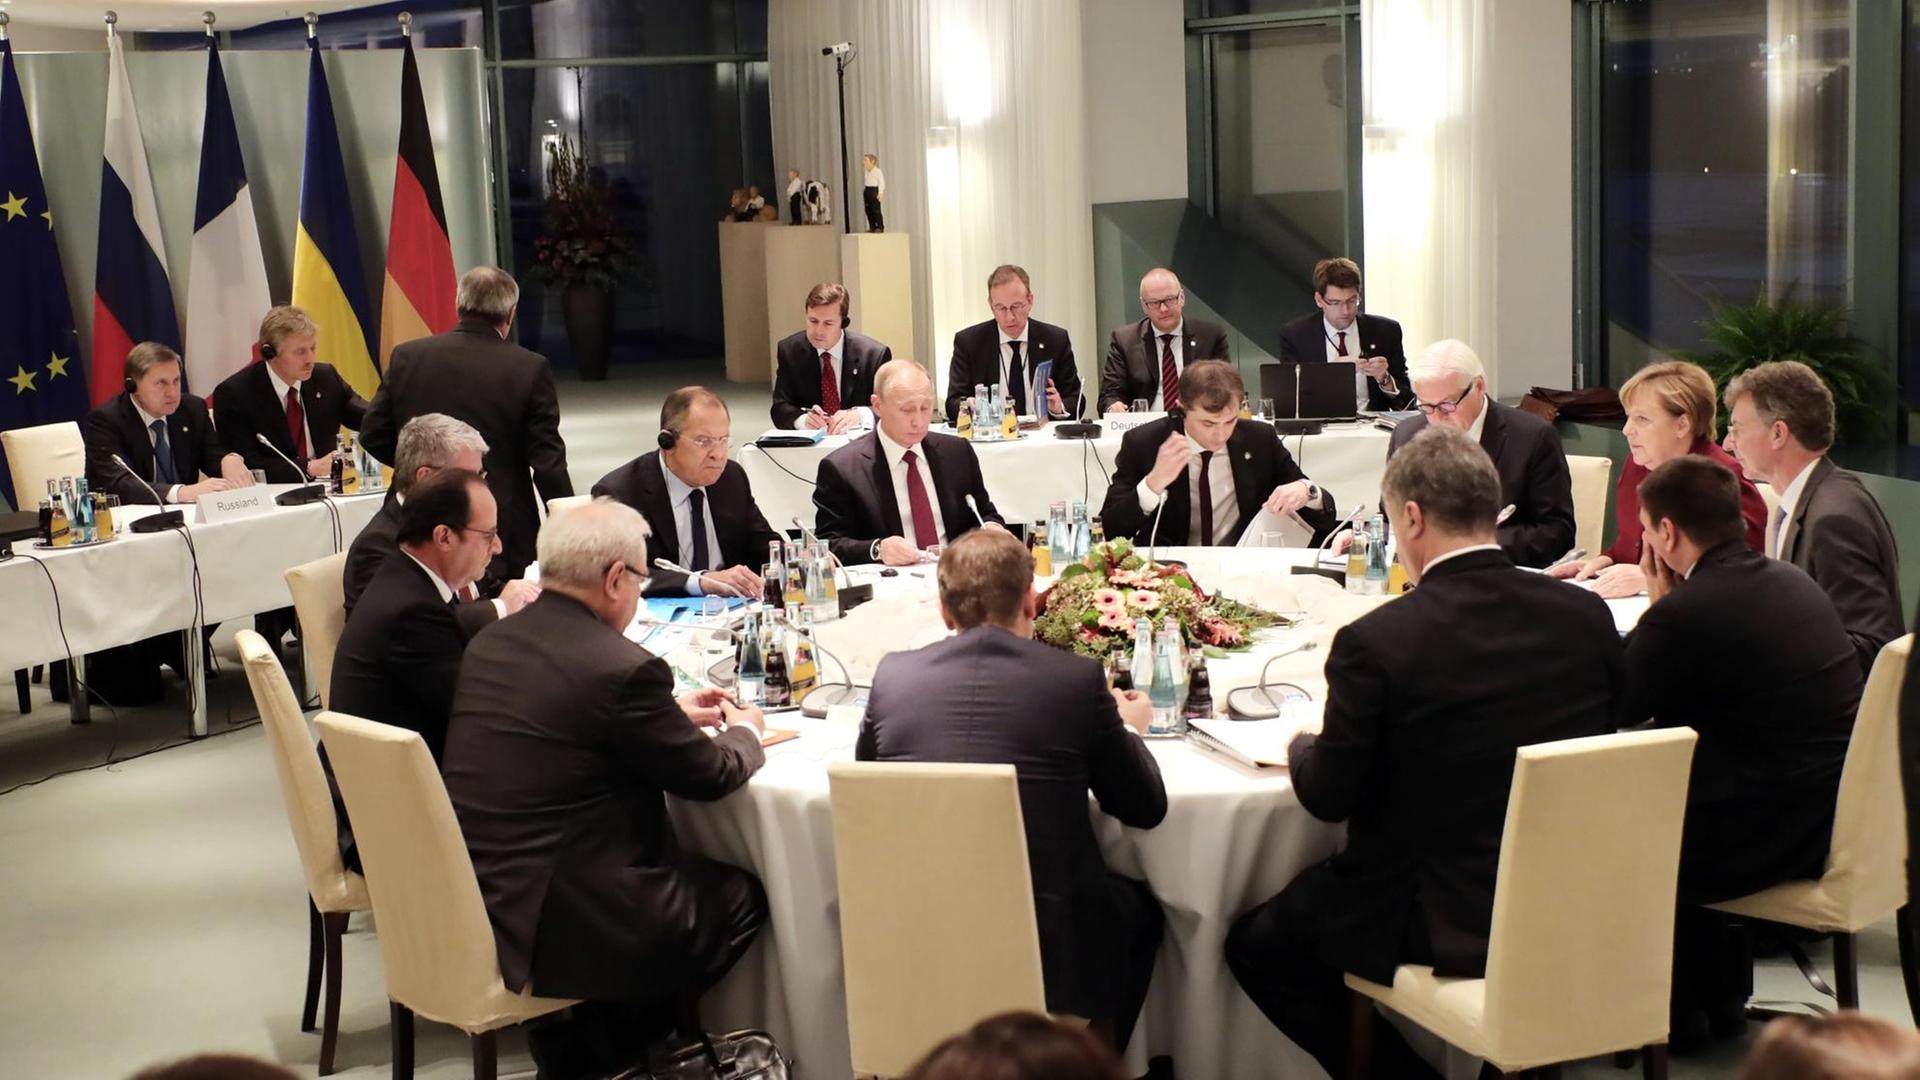 Das Bild zeigt die Verhandlungsrunde im Kanzleramt am späten Abend des 19. Otobers 2016 im Berliner Kanzleramt. Mit am Tisch sitzen unter anderem Bundeskanzlerin Merkel sowie die Präsidenten der Ukraine, Russlands und Frankreichs - Poroschenko, Putin und Hollande.